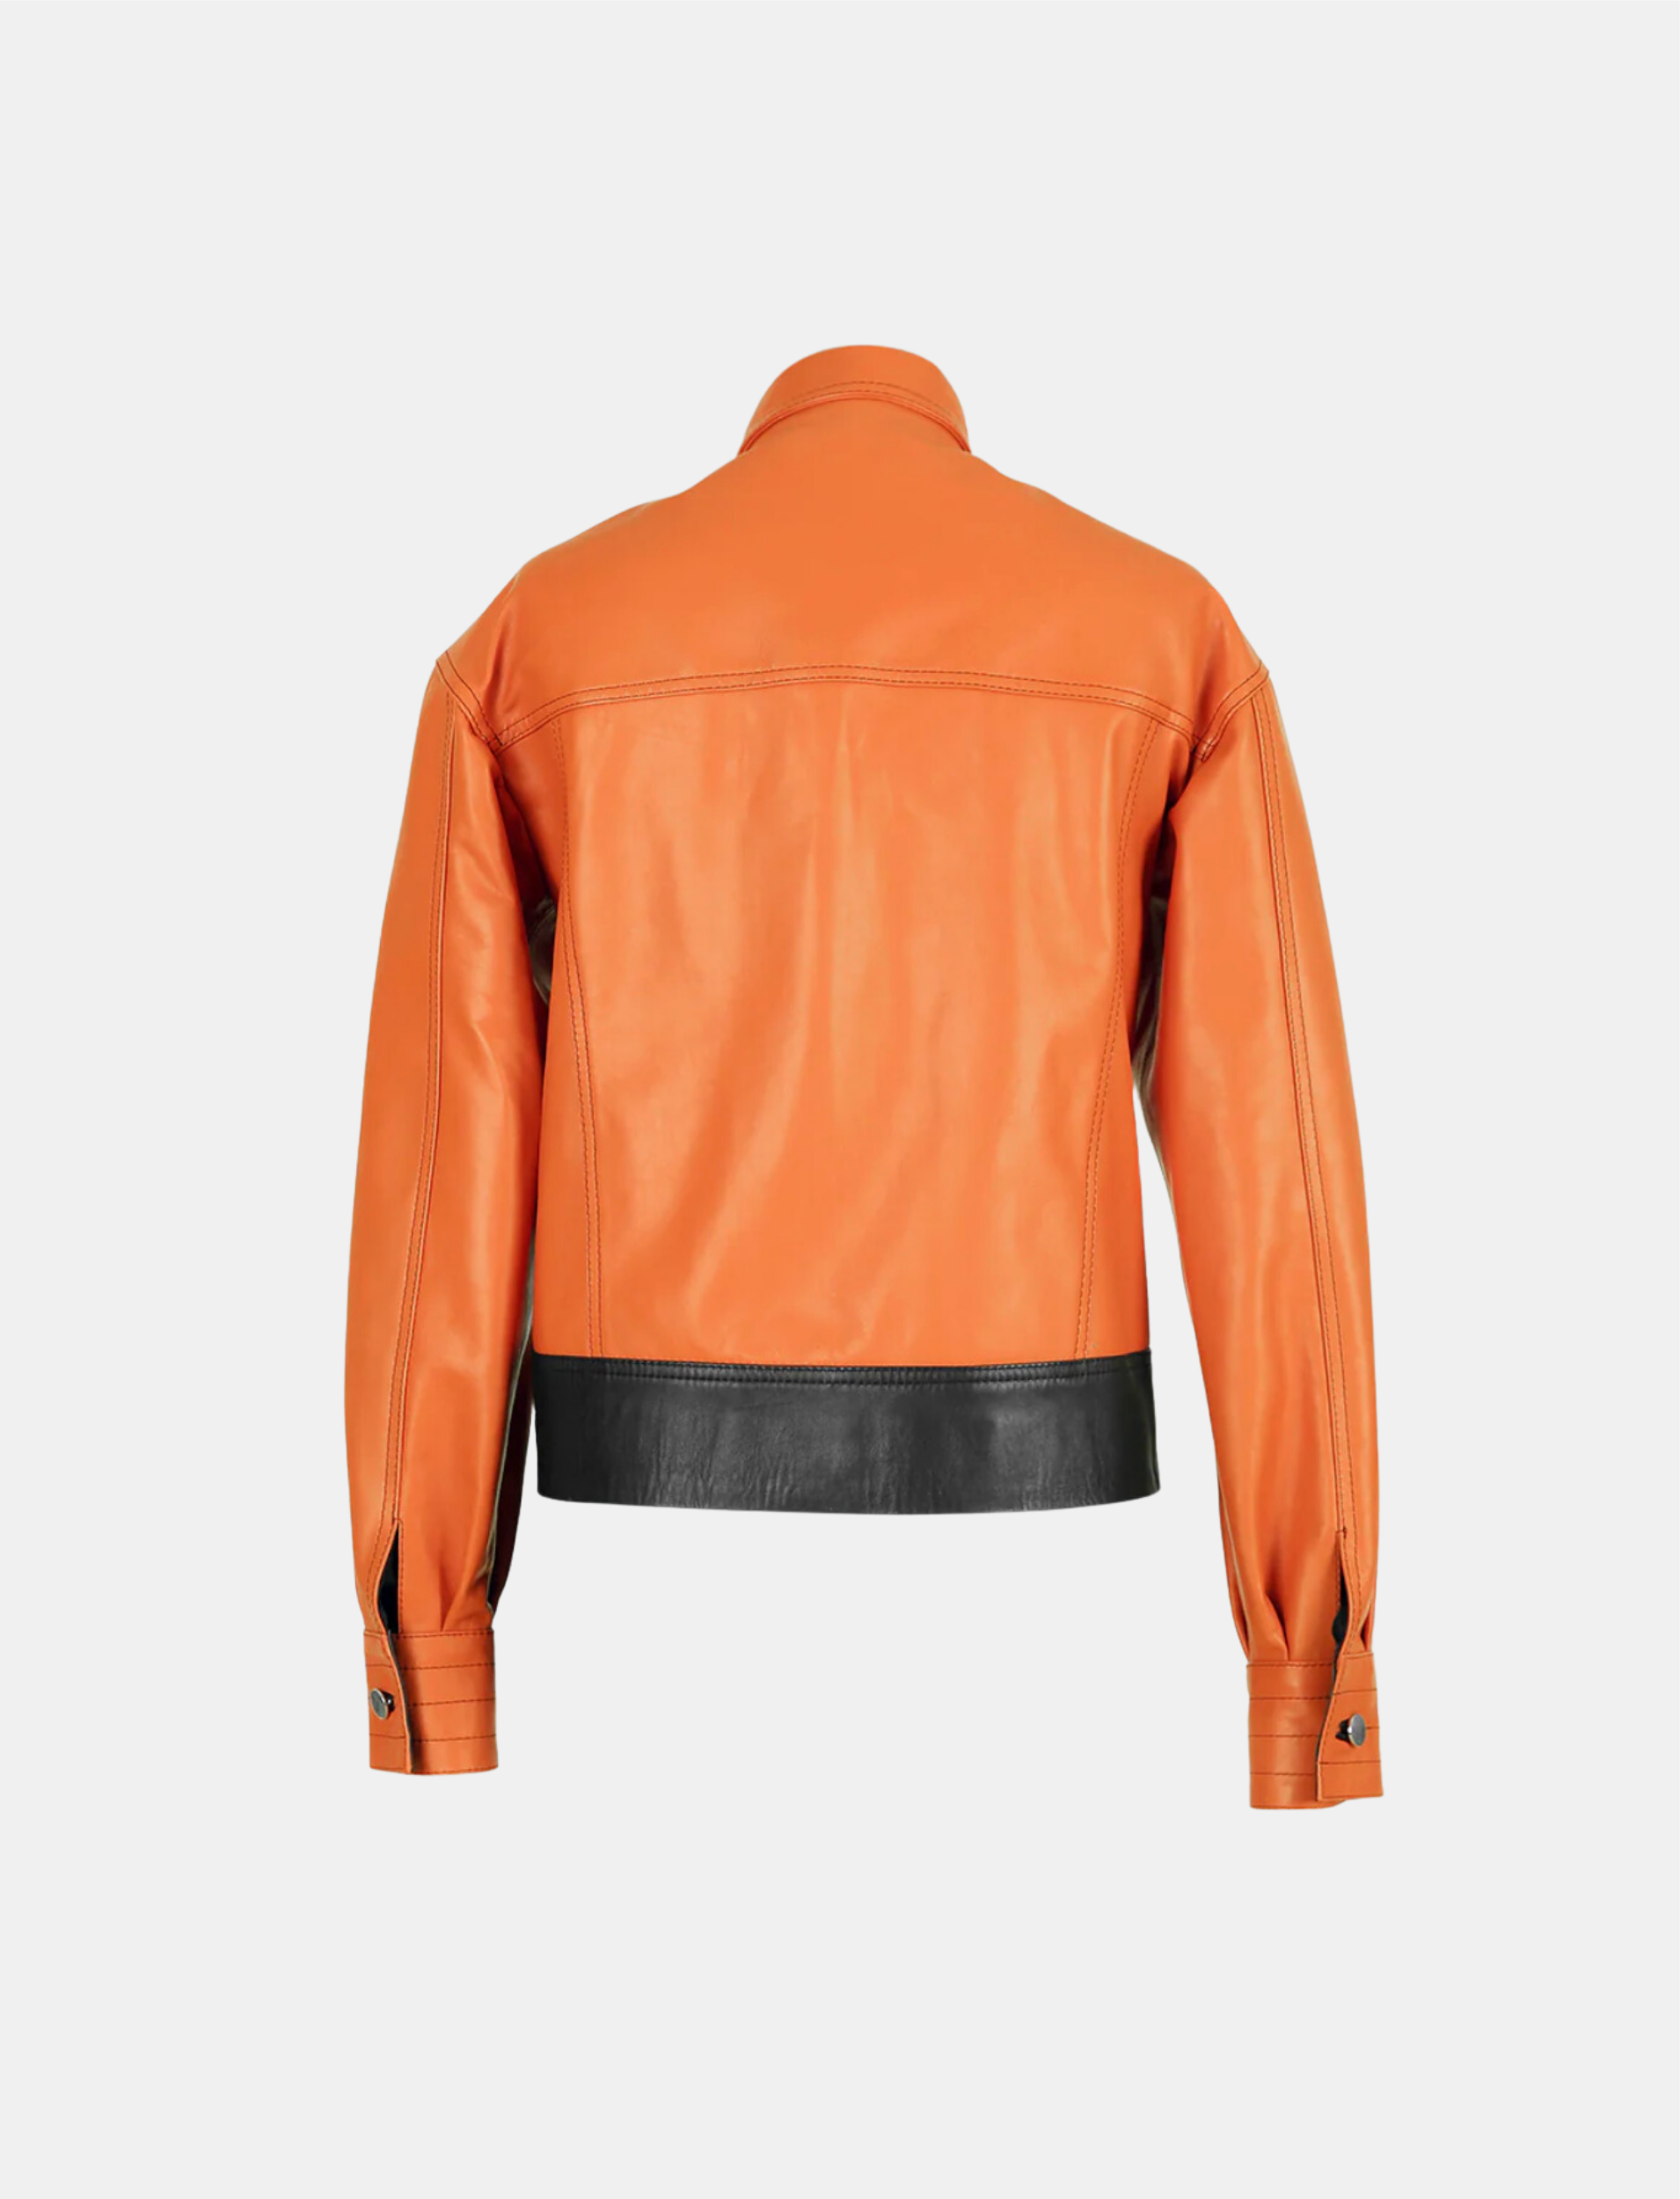 Lennox Leather Jacket